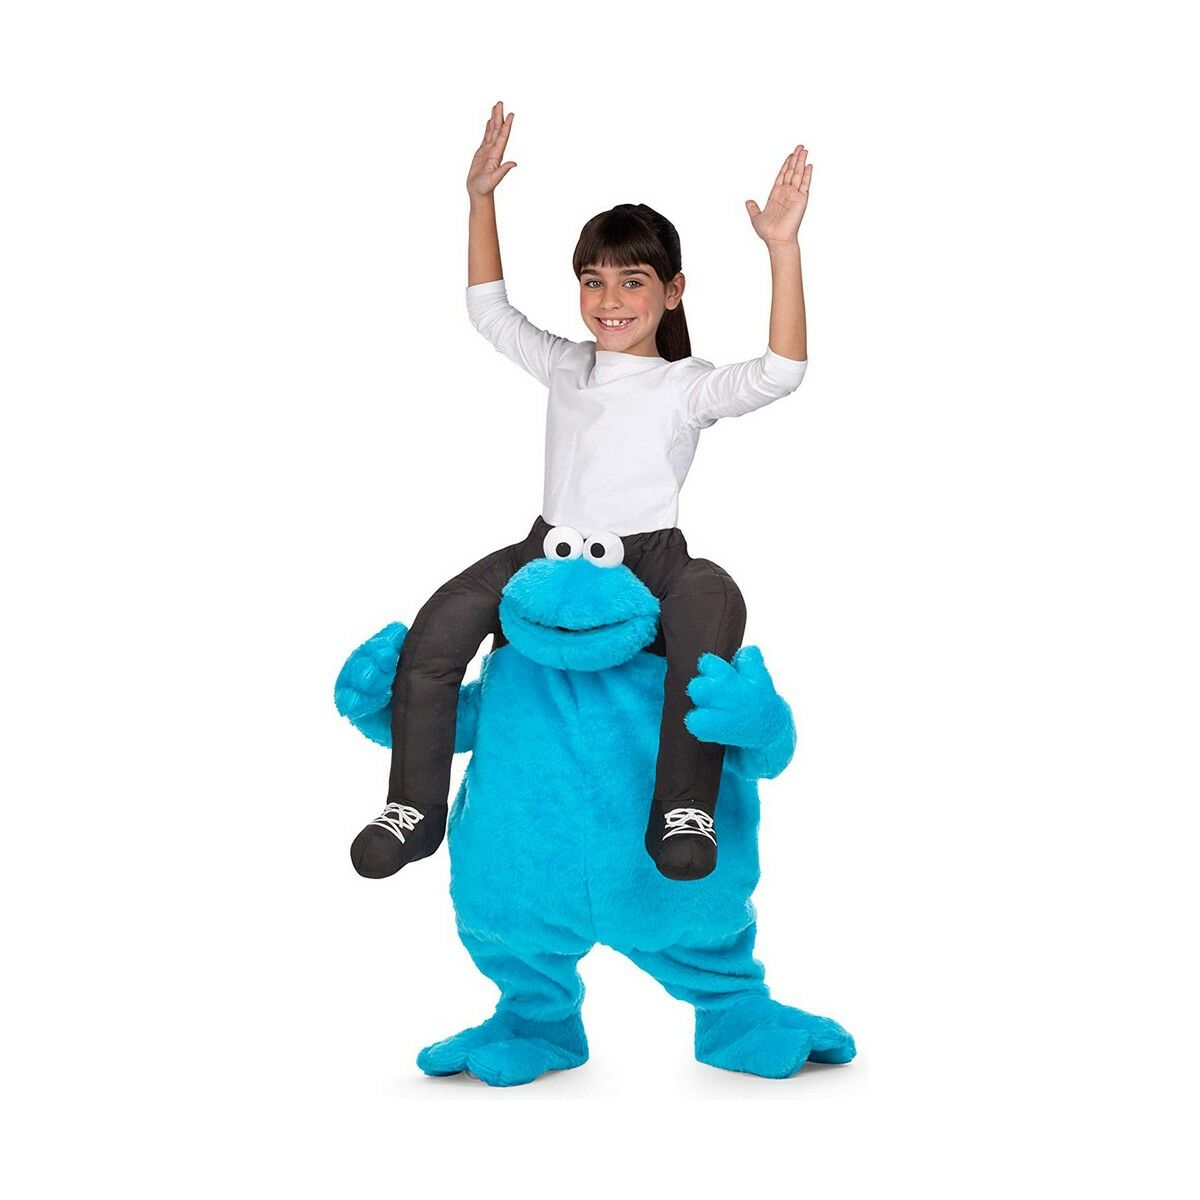 Verkleidung für Kinder My Other Me Ride-On Cookie Monster Sesame Street Einheitsgröße